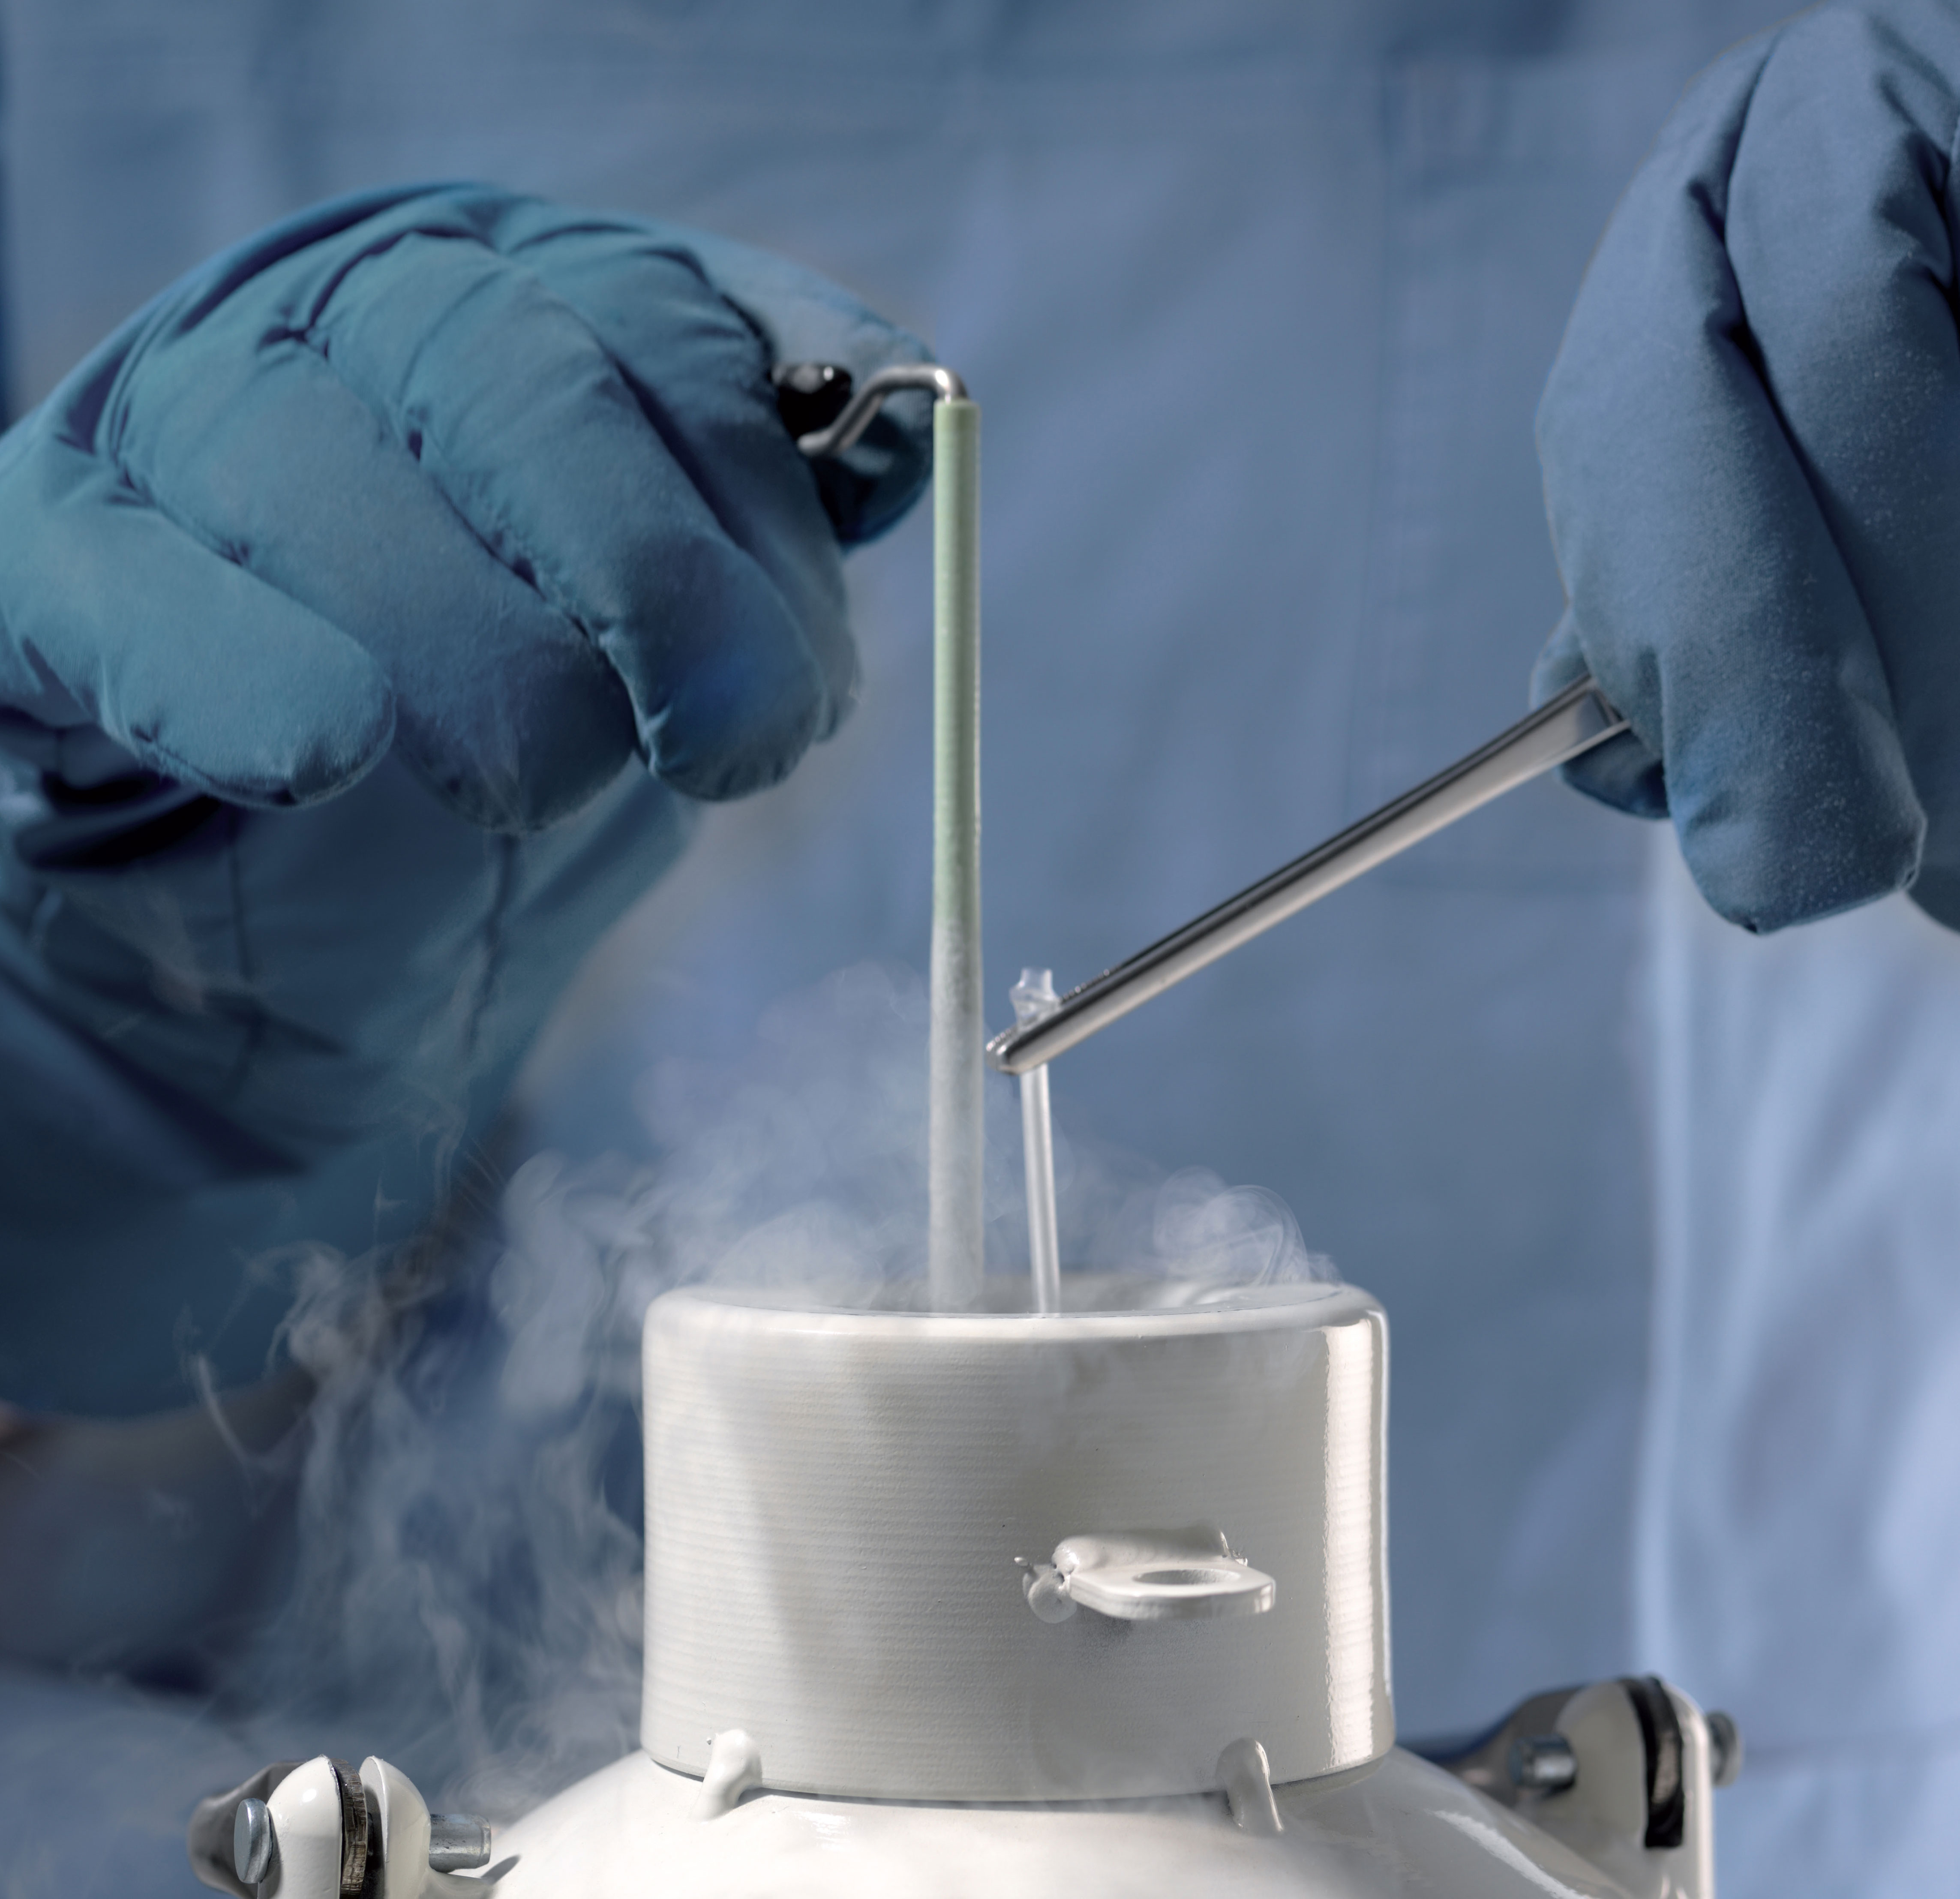 Abbildung der Einlagerung eines hermetisch verschweißten Kryo-Straws in Stickstofftank │ © 2021 Next Fertility IVF Prof. Zech